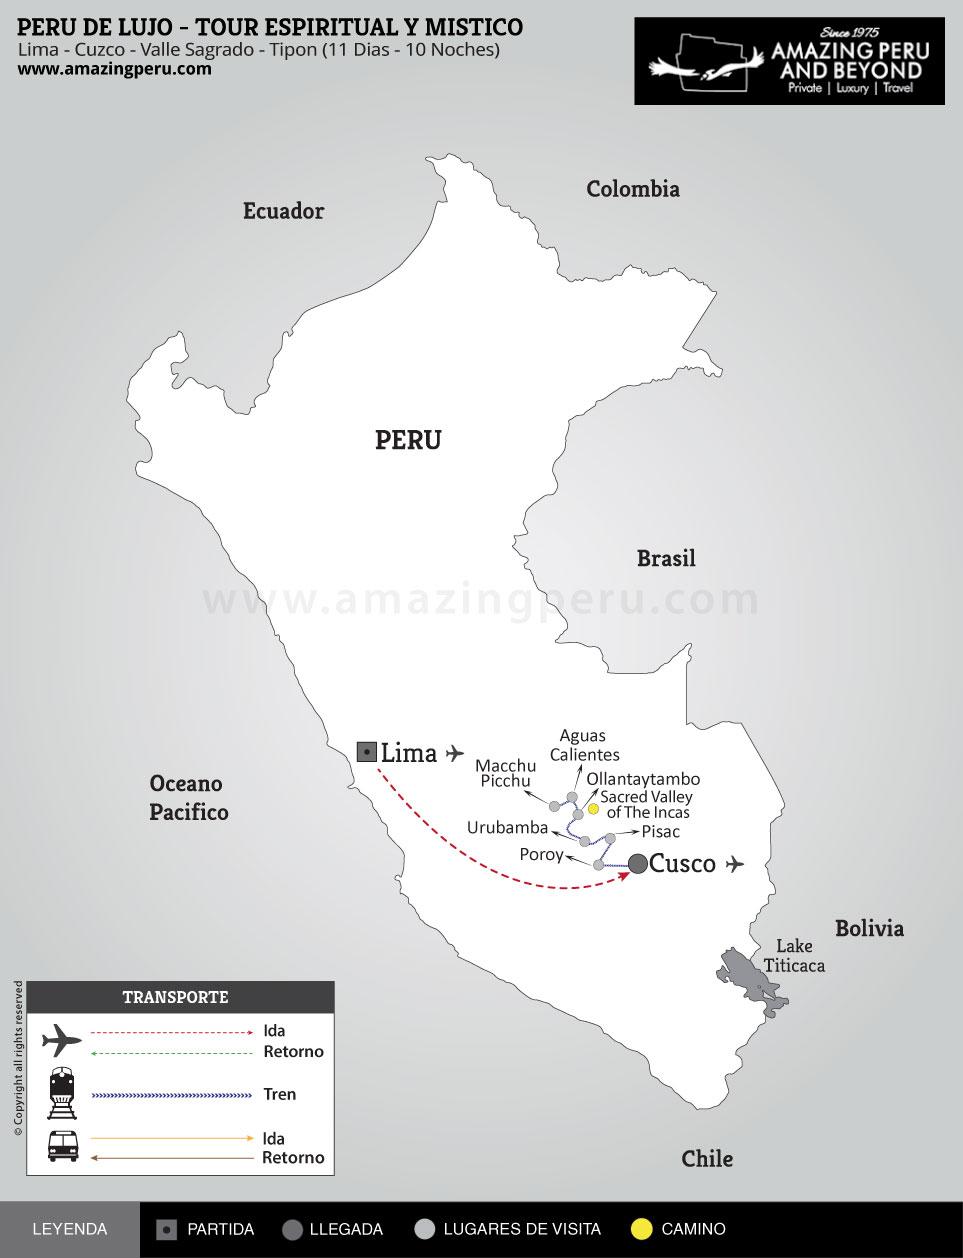 Peru de Lujo - Tour Espiritual y Místico